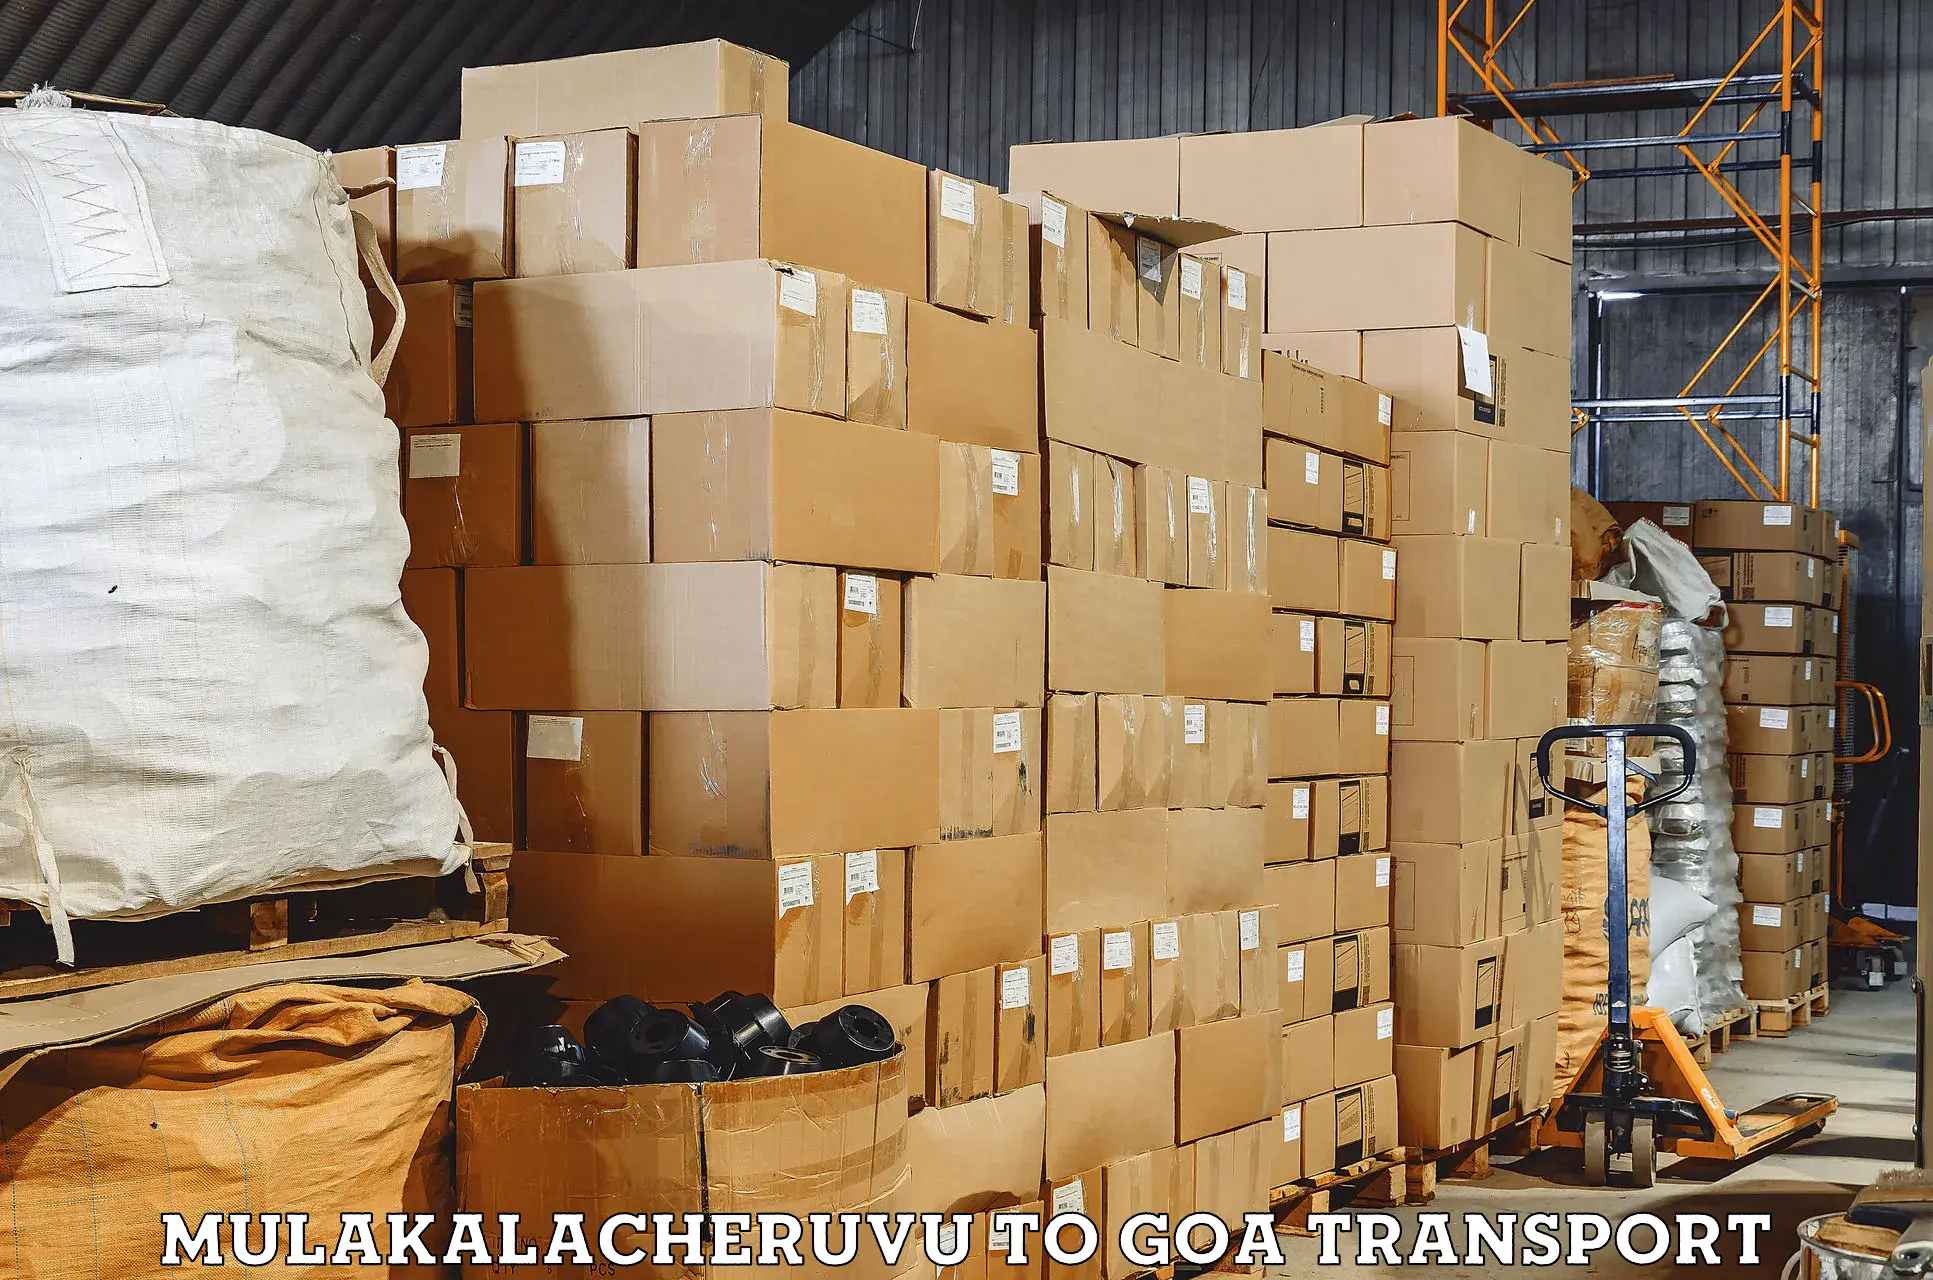 Pick up transport service Mulakalacheruvu to South Goa